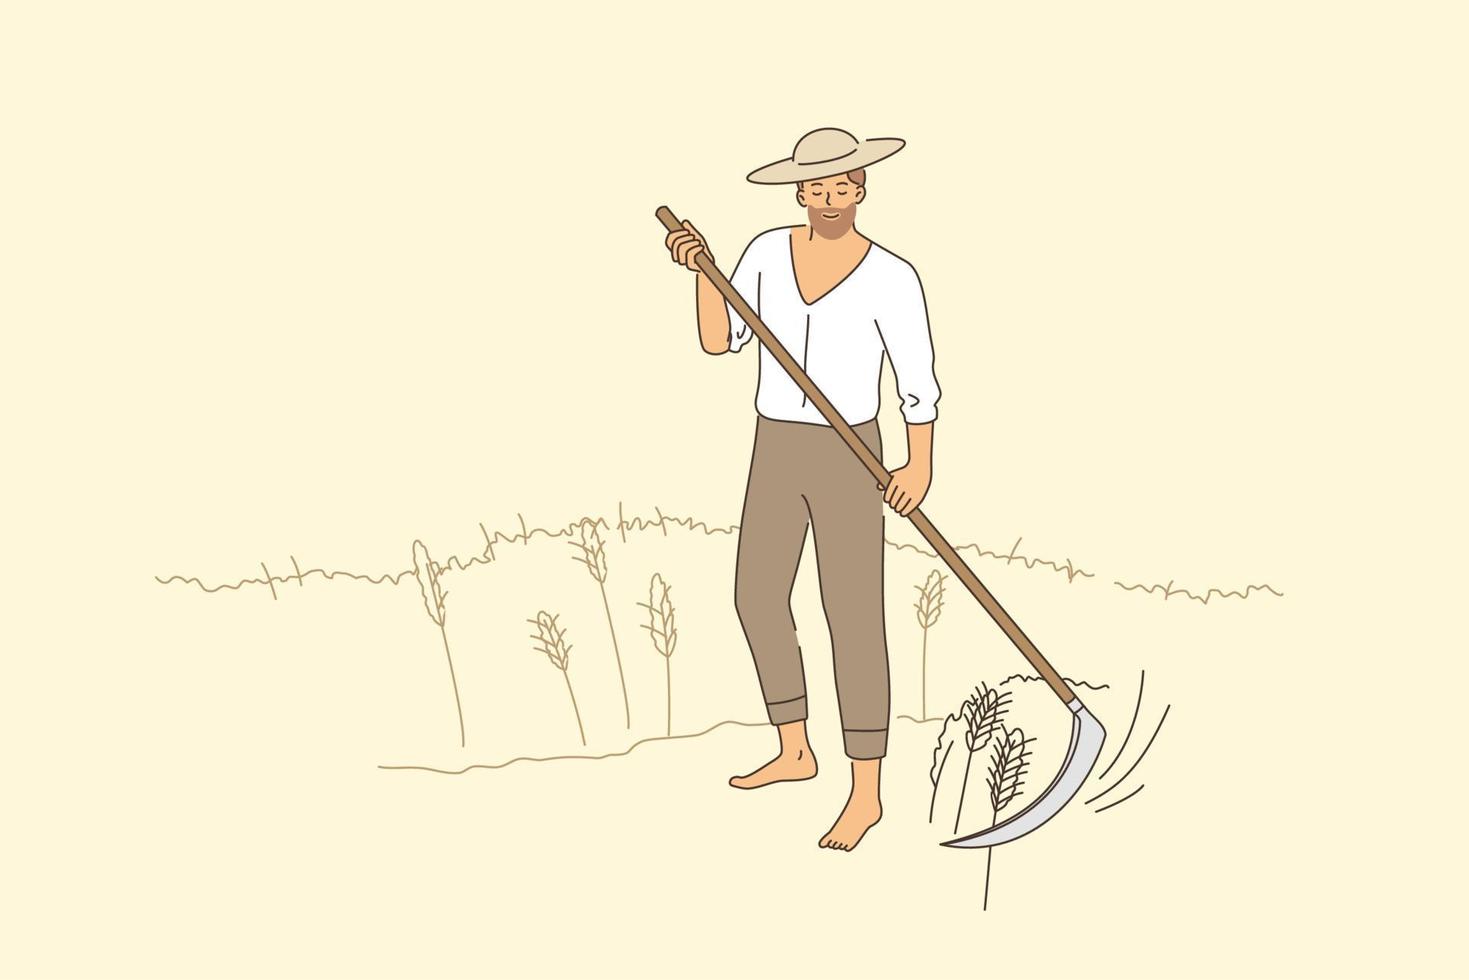 jordbruk och lantlig lantbruk begrepp. ung leende man jordbrukare i hatt barfota stående klippning råg i augusti skörd vektor illustration